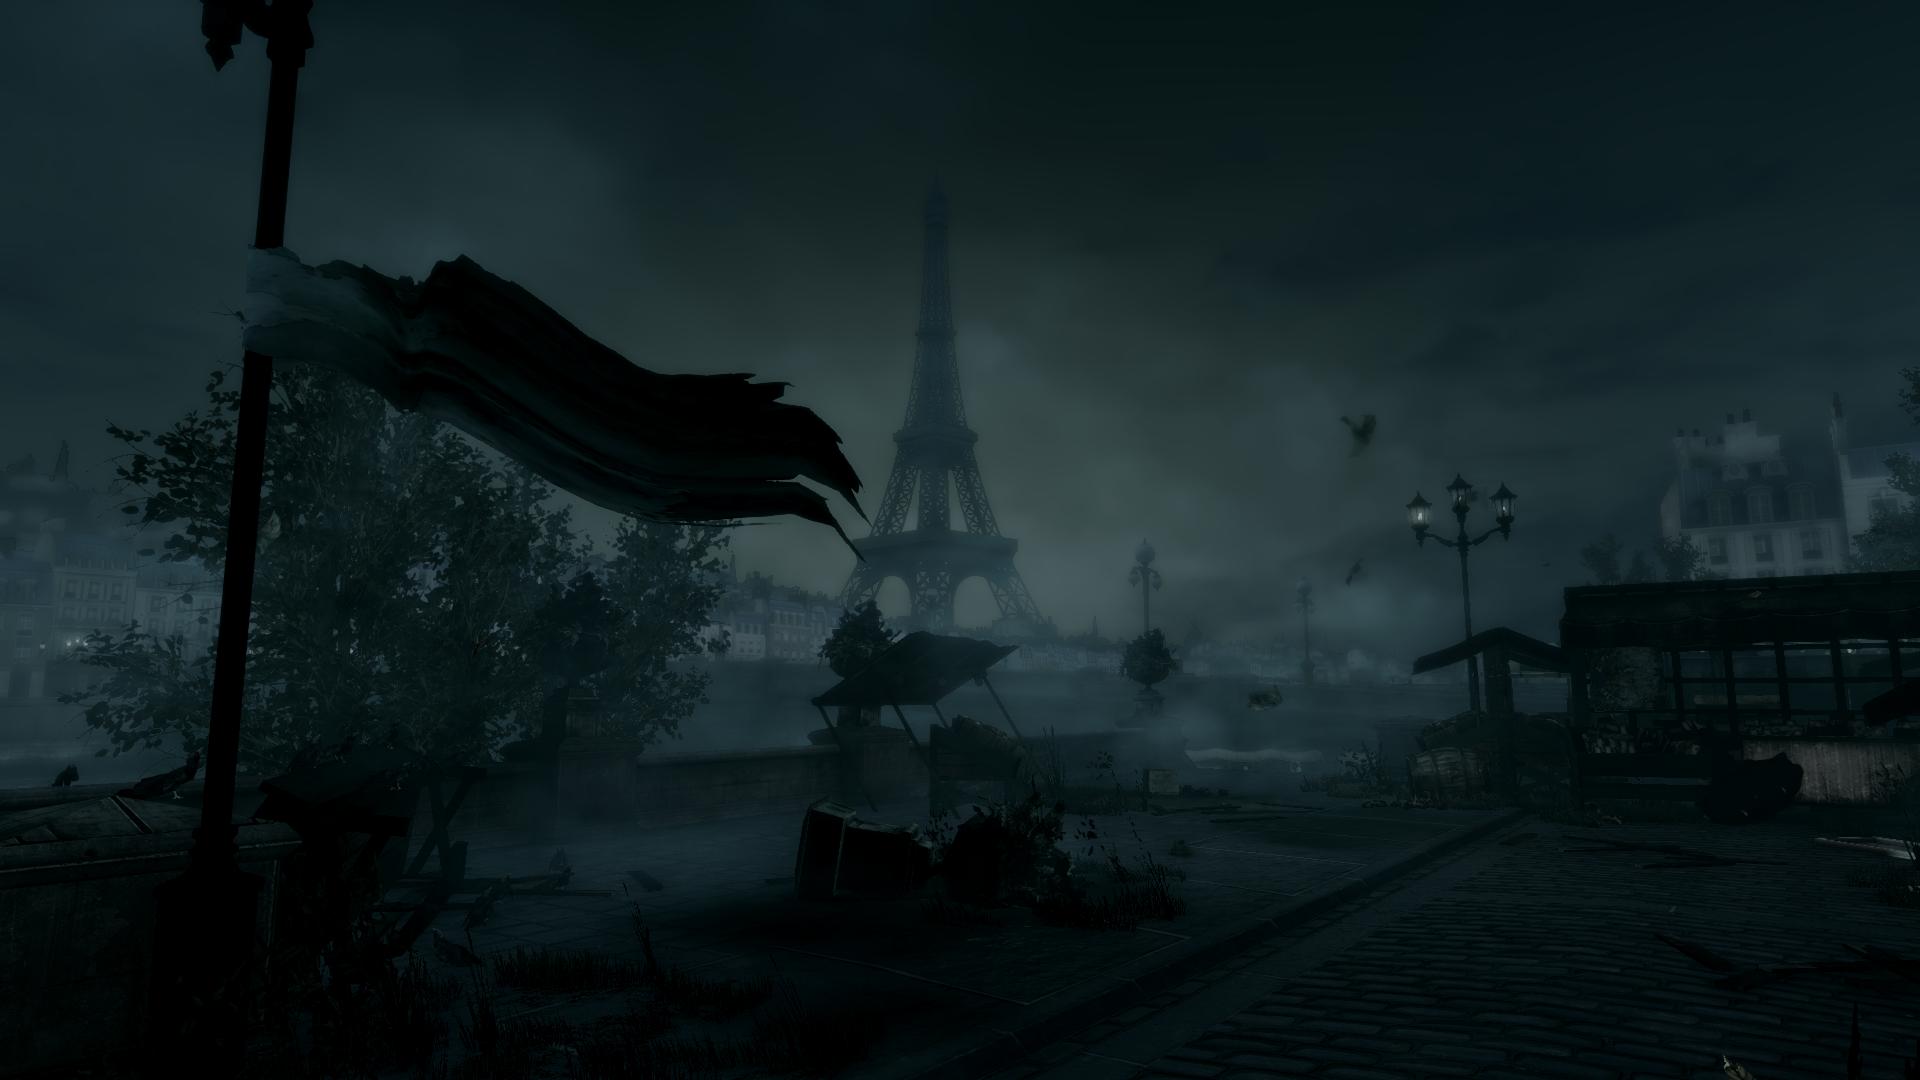 BioShock Infinite: Burial at Sea. Nightmare Paris by Wayss